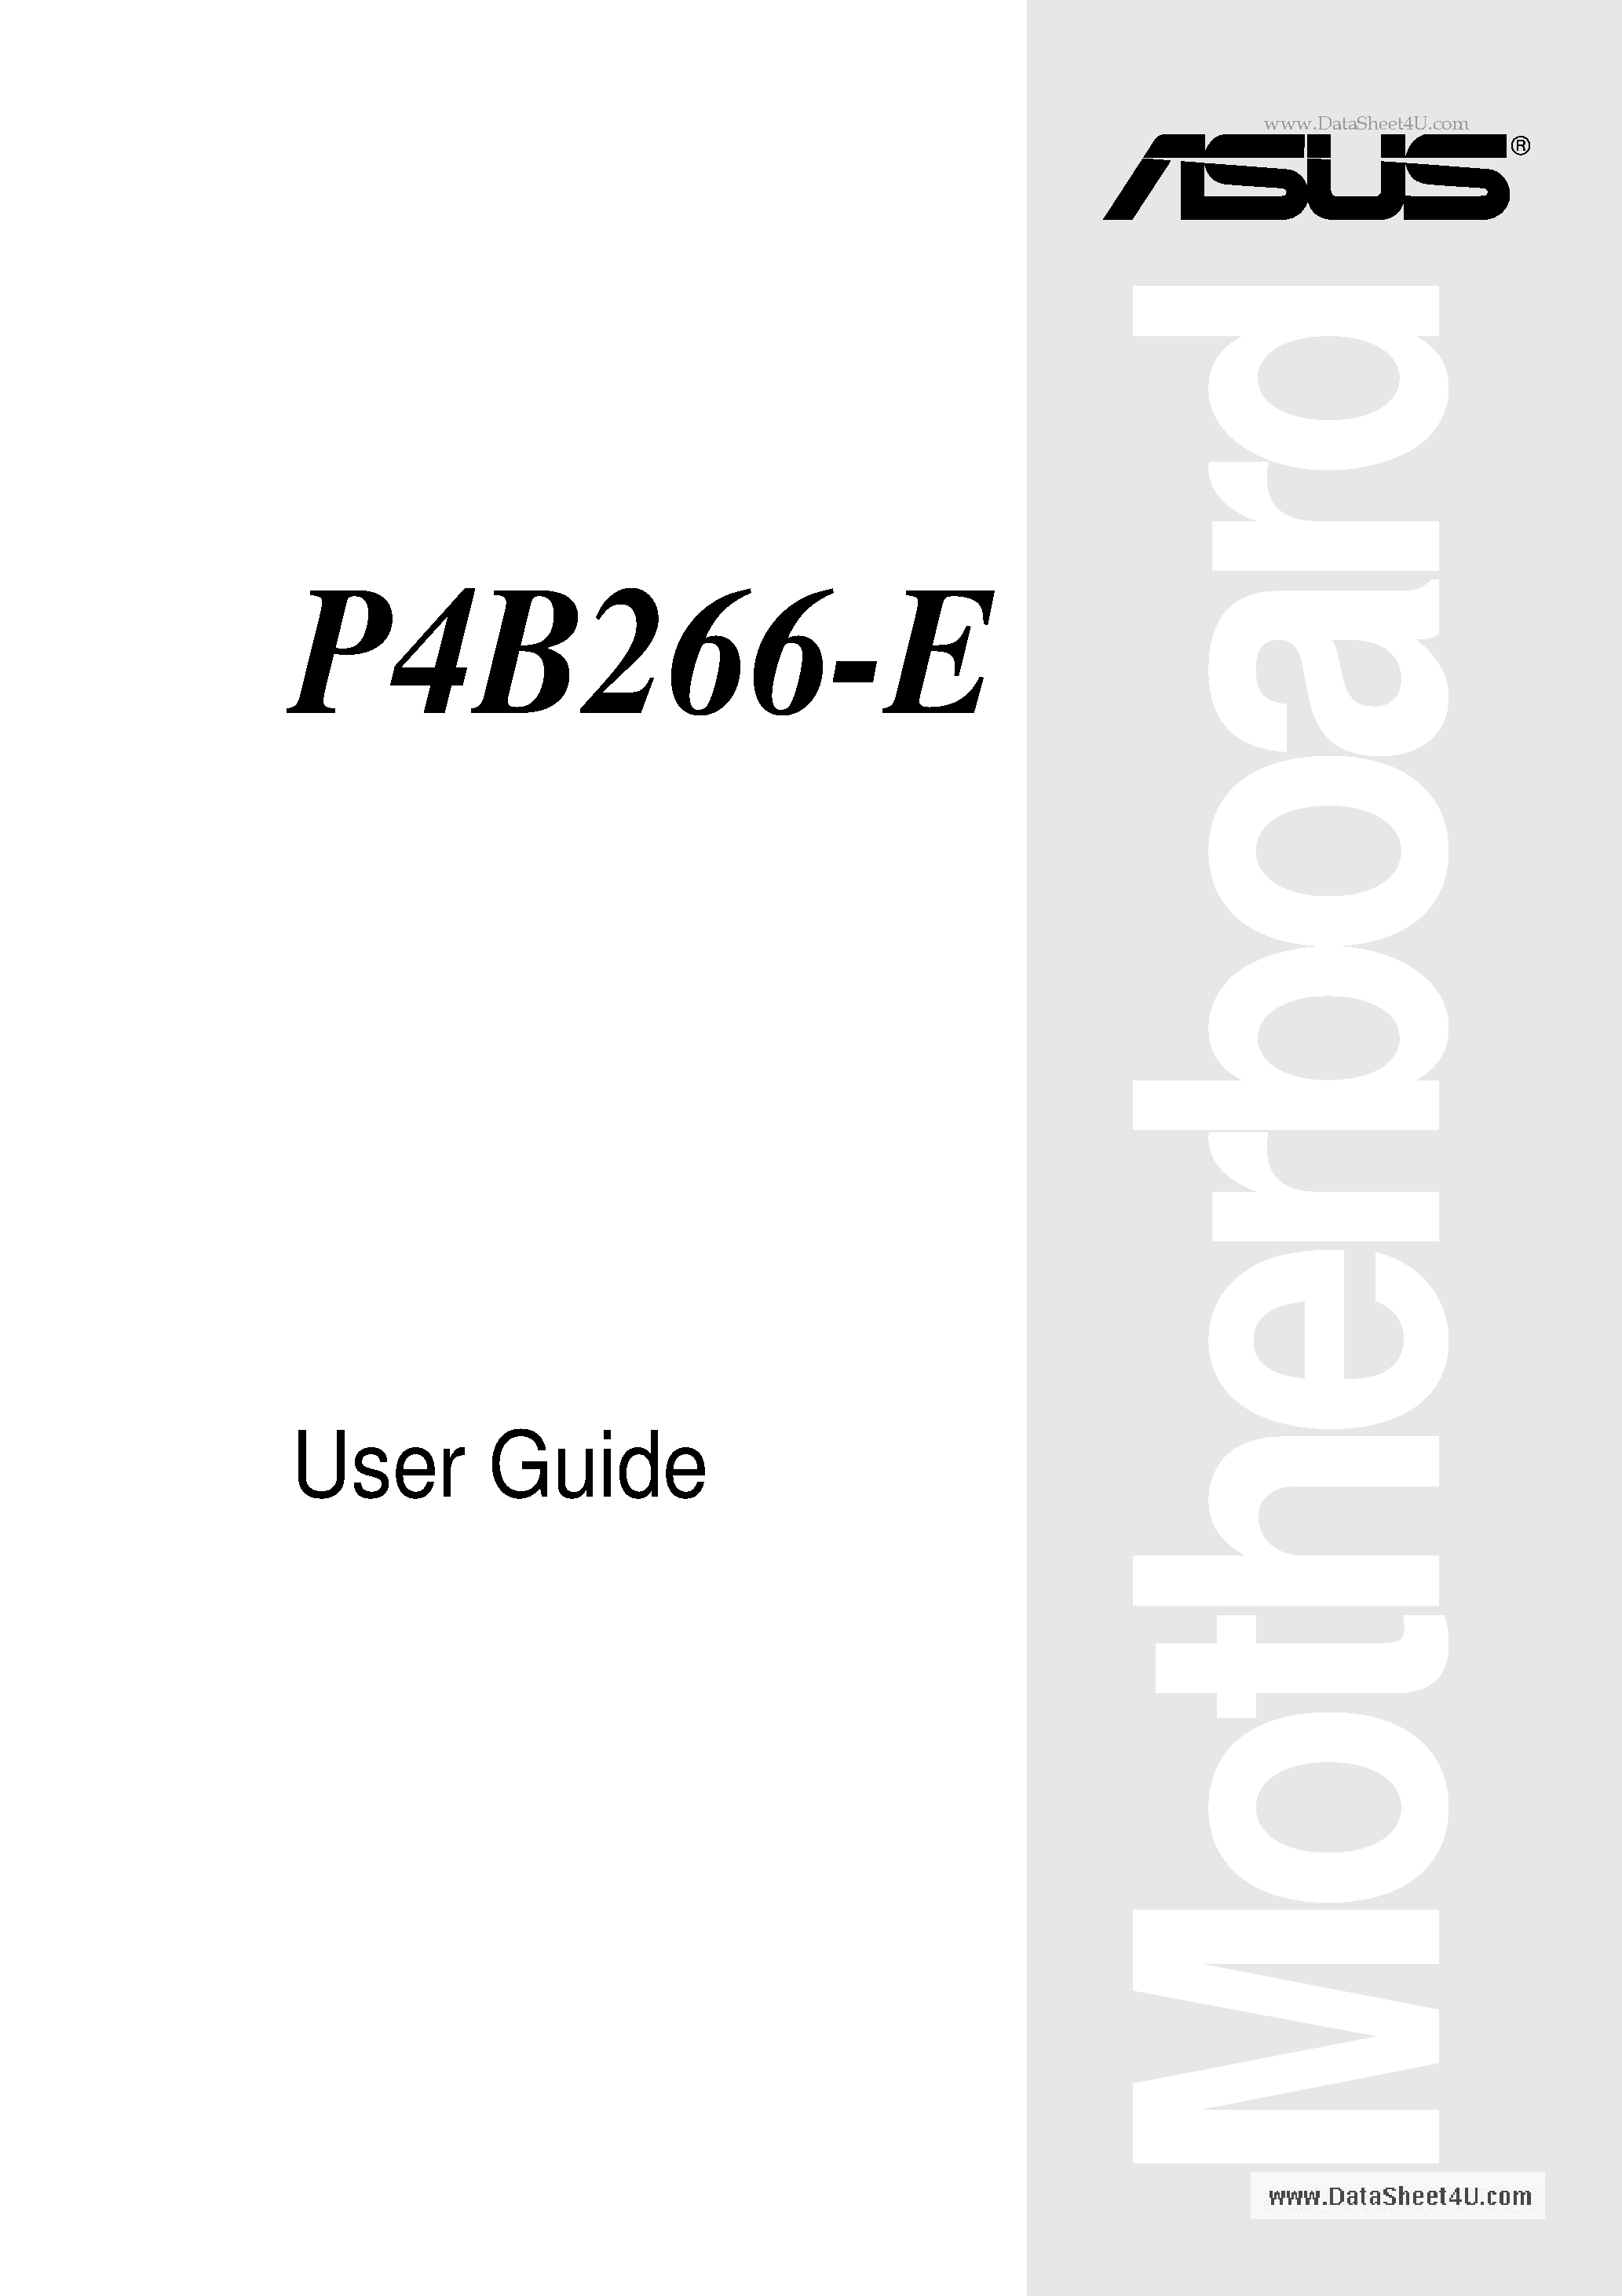 Даташит P4B266-E - User Guide страница 1